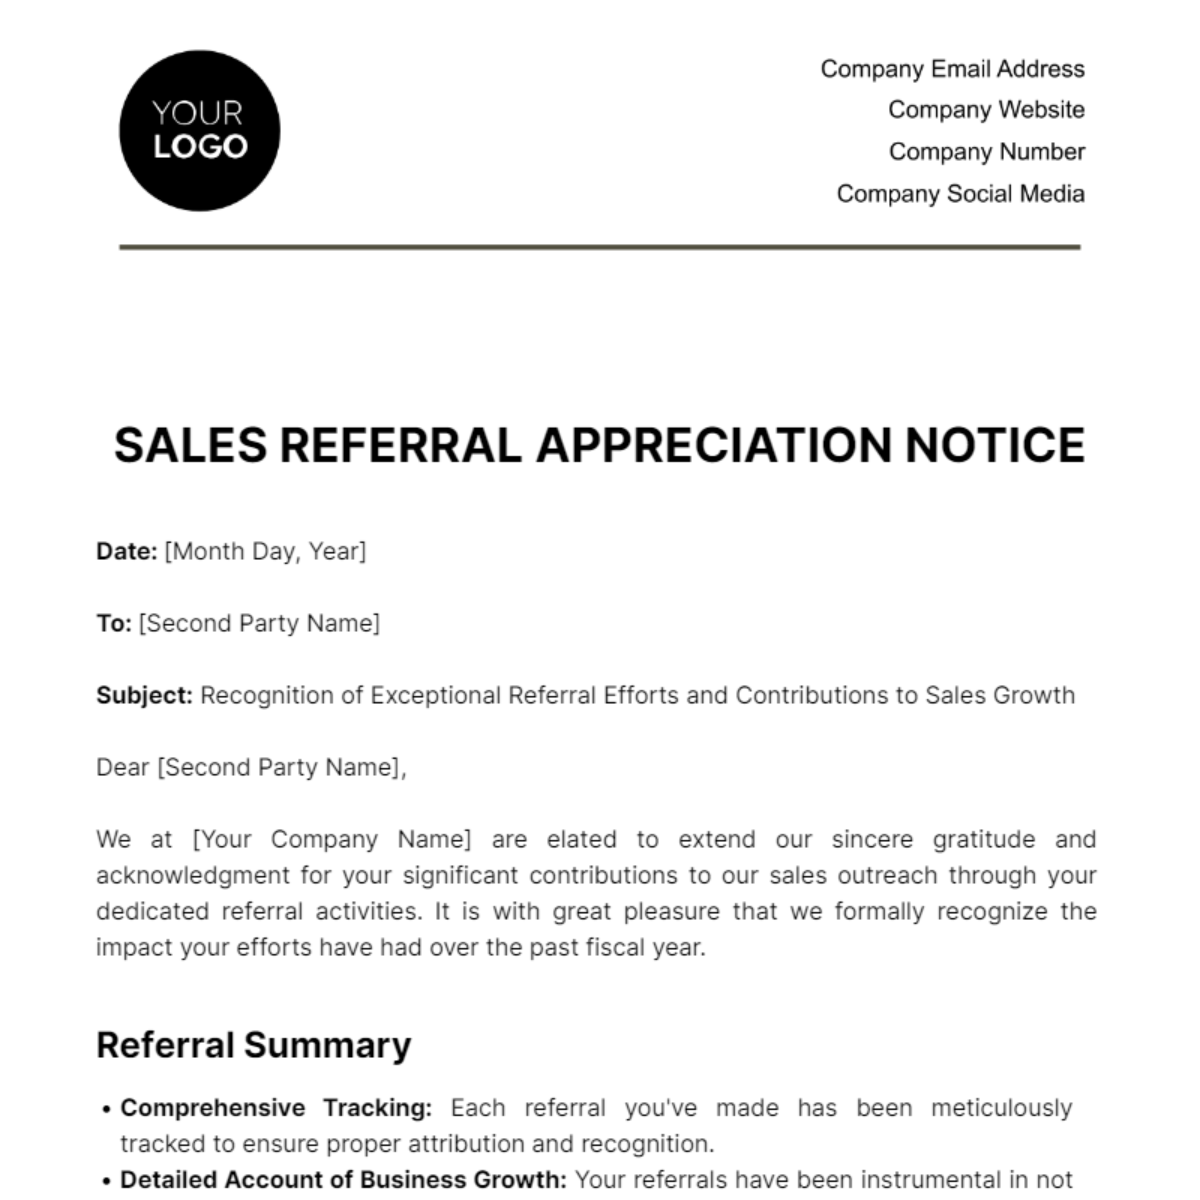 Sales Referral Appreciation Notice Template